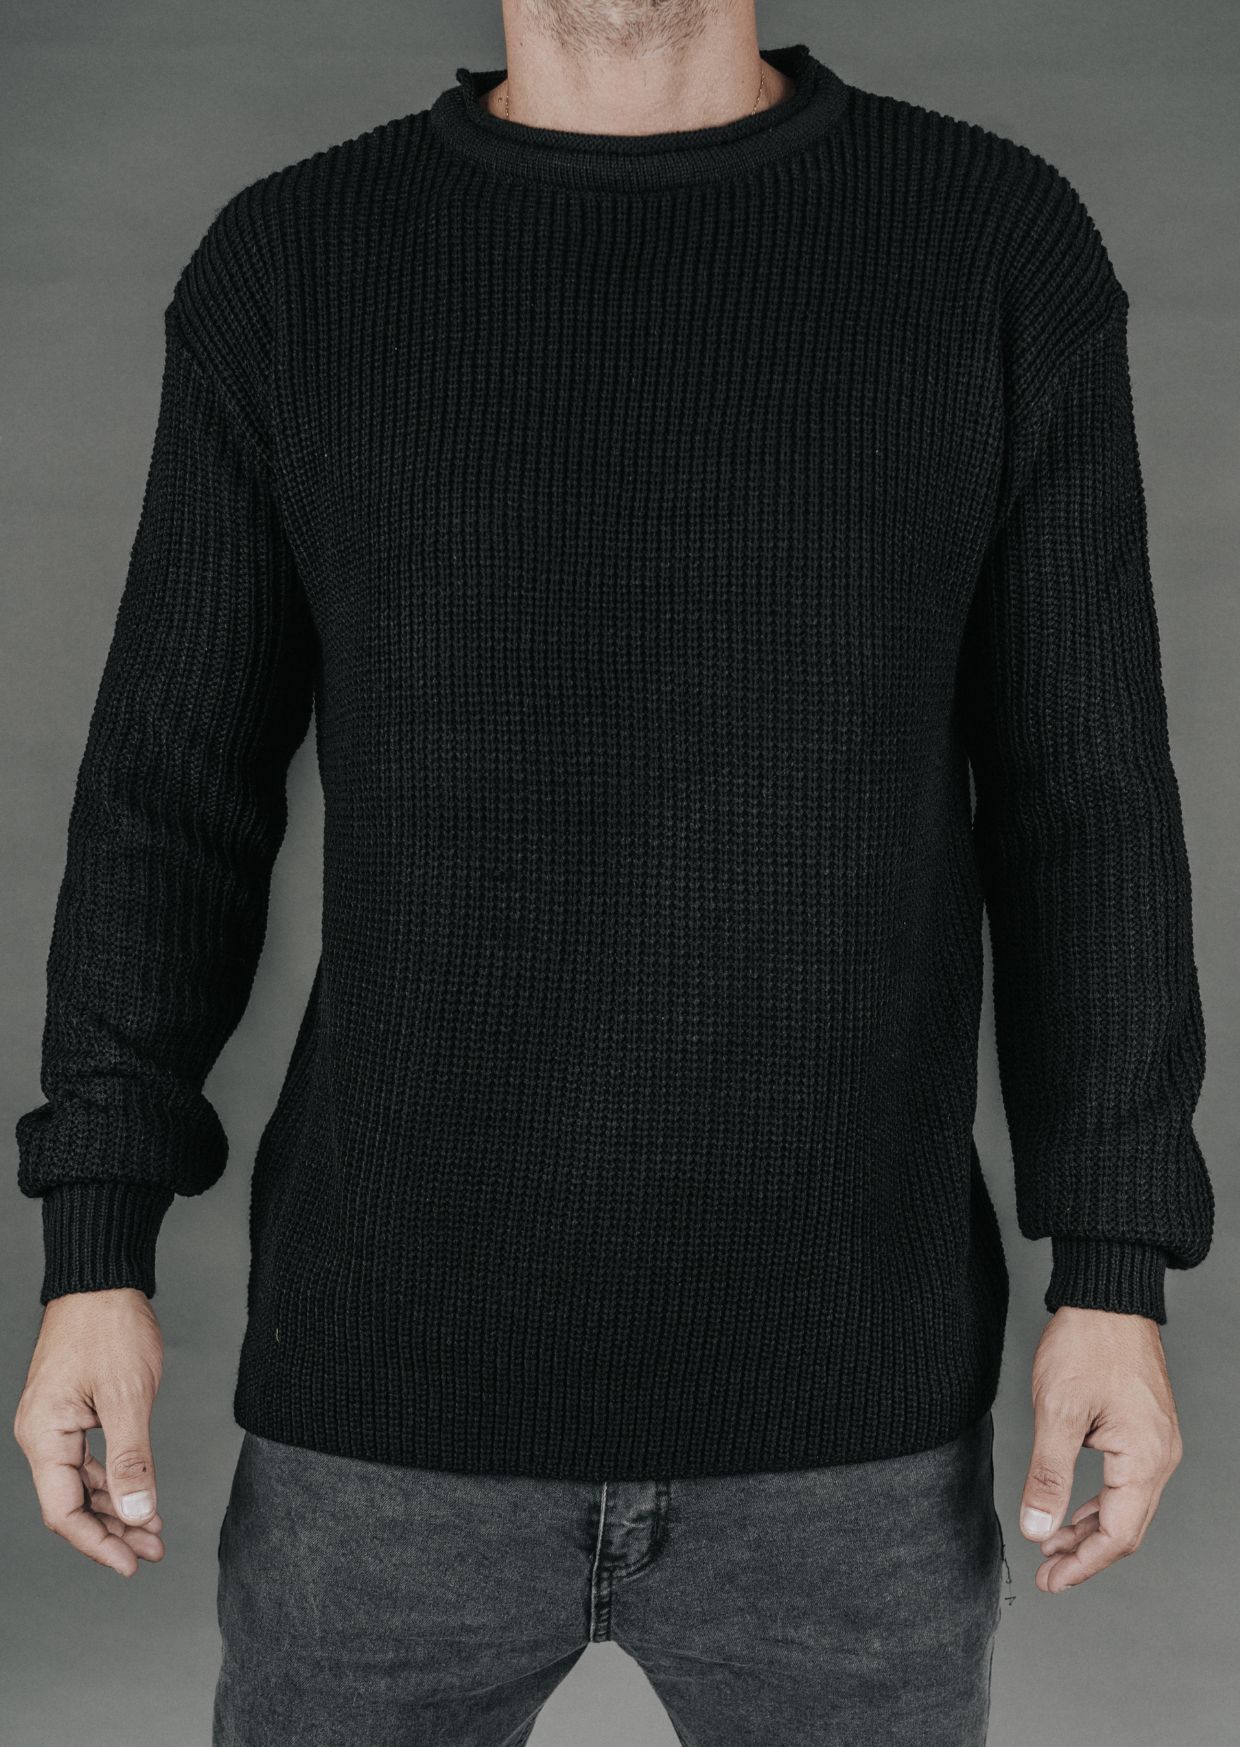 Sweater ota negro